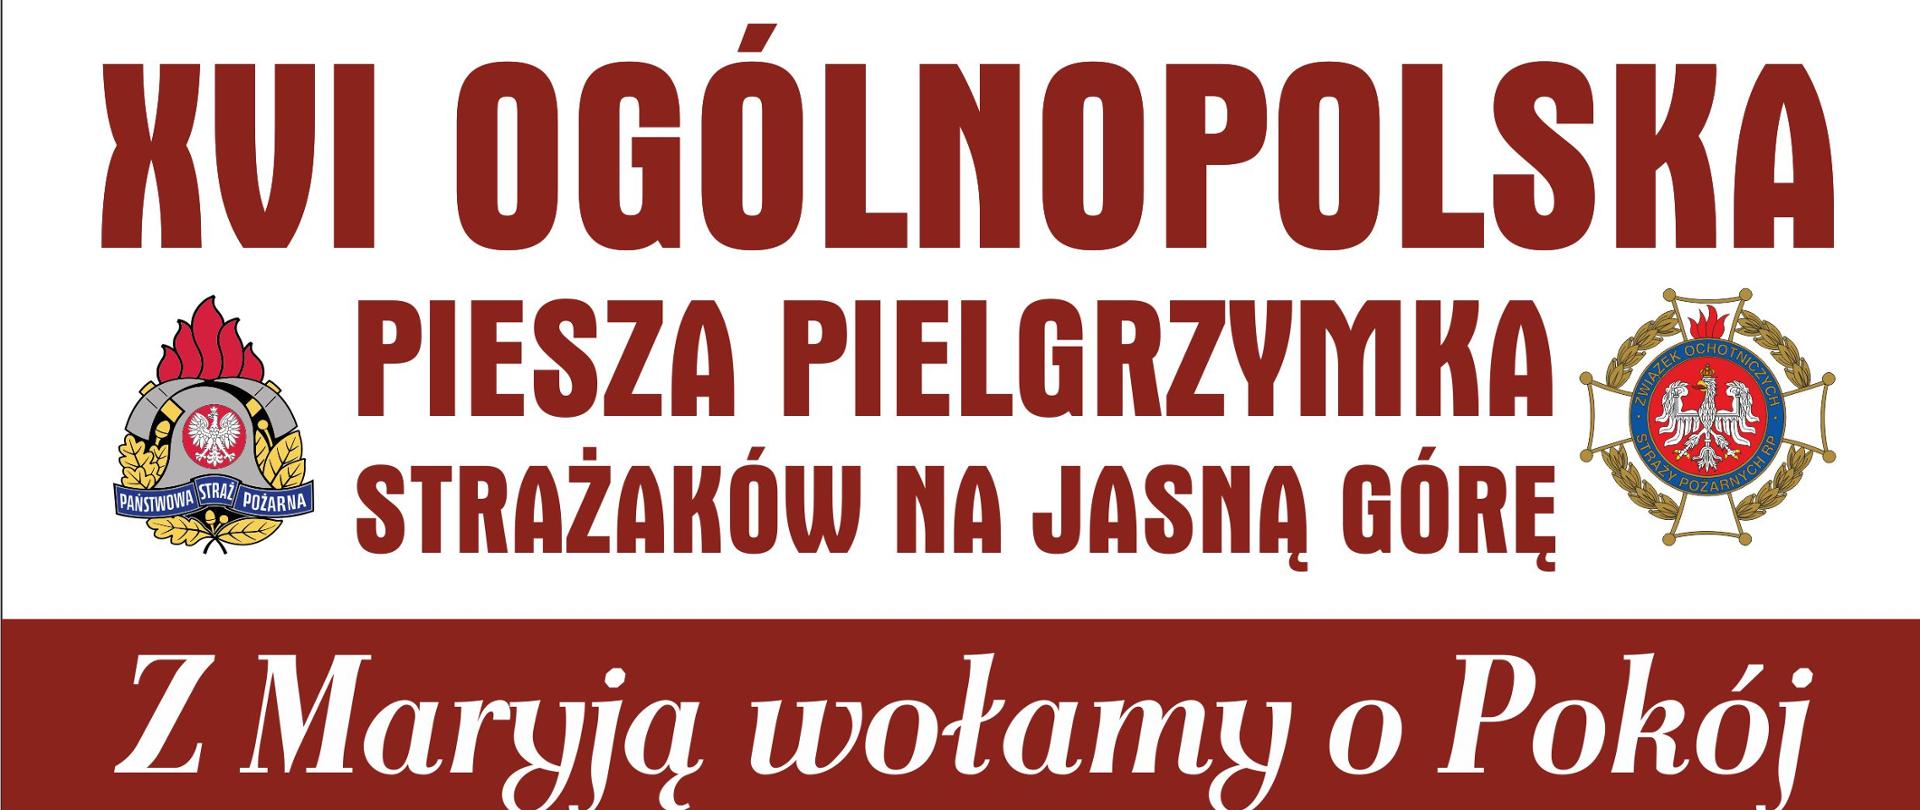 Obraz przedstawia plakat XVI Ogólnopolskiej Pieszej Pielgrzymki Strażaków na Jasną Górę.